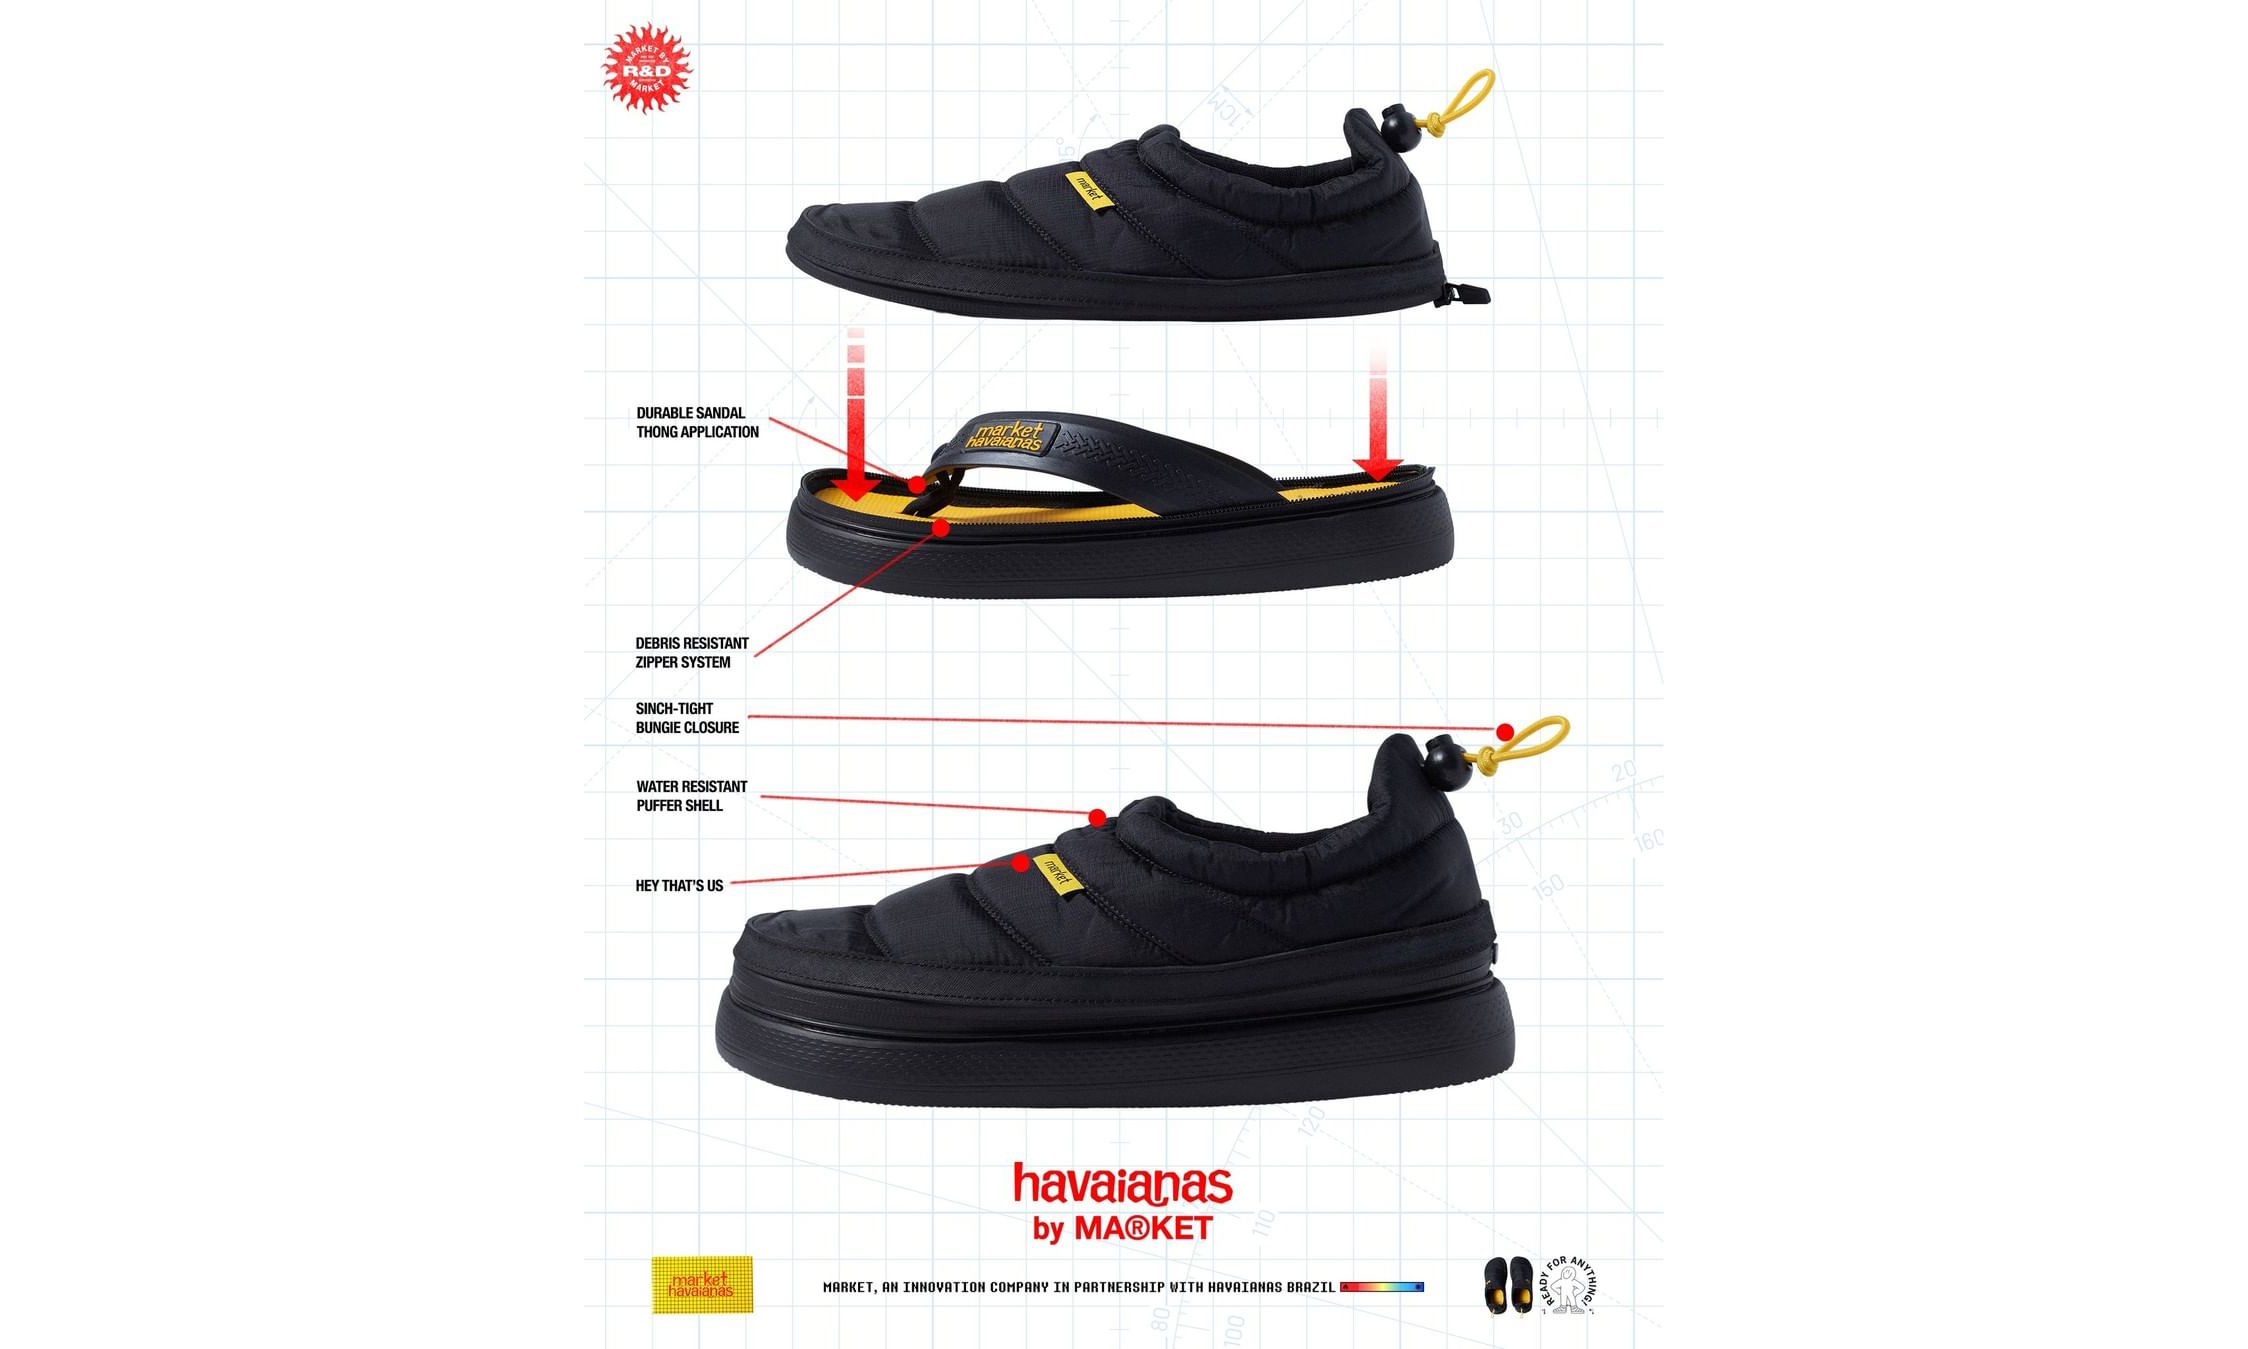 MARKET x Havaianas 推出创意版 Zip Top 拖鞋